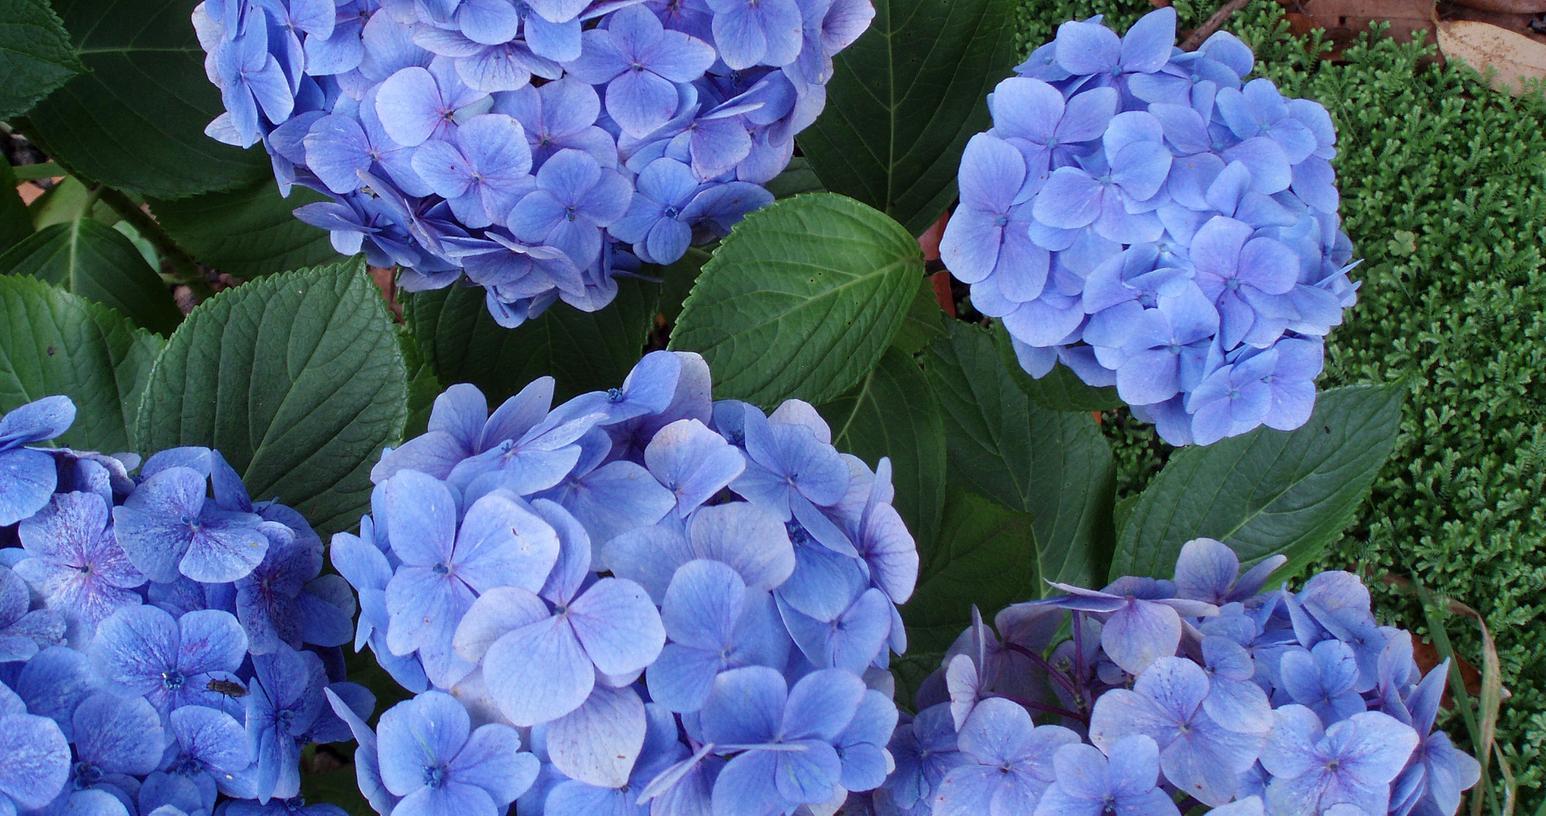 Schwabachs Gartenbesitzer kommen nicht zur Ruhe: Hortensien-Blüten sind eine beliebte Trophäe.